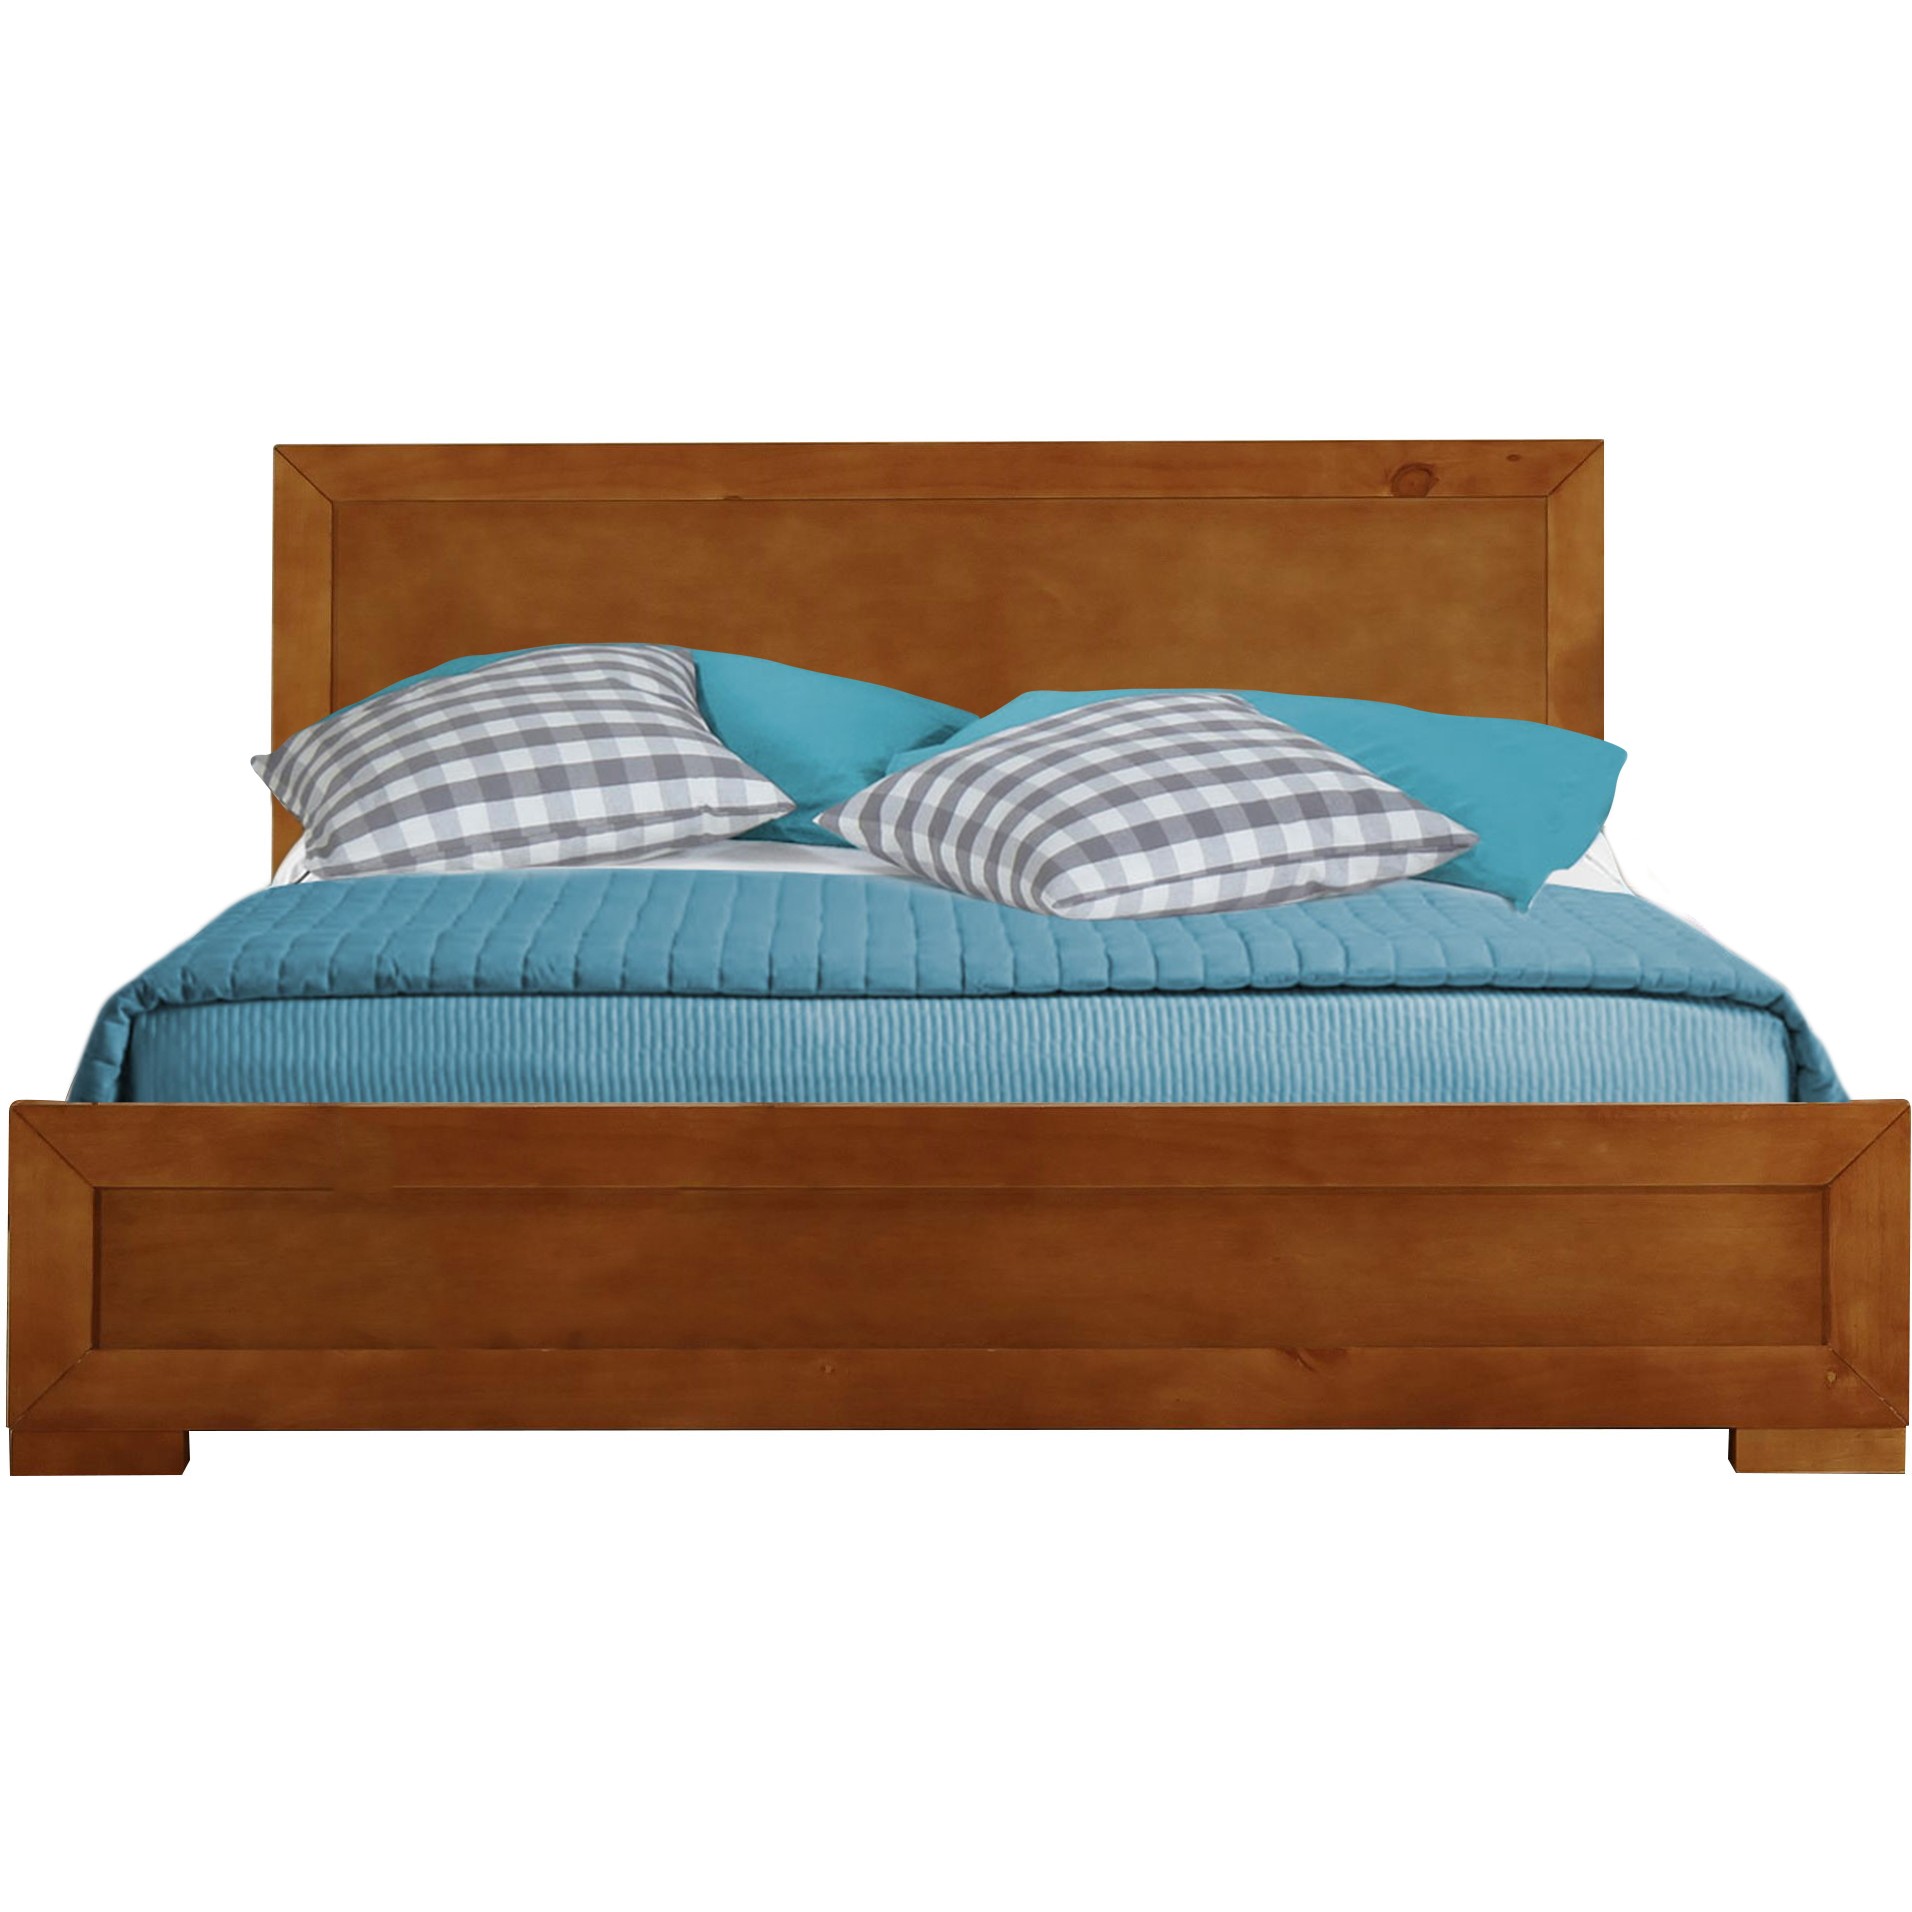 Oak Wood Full Platform Bed-397084-1